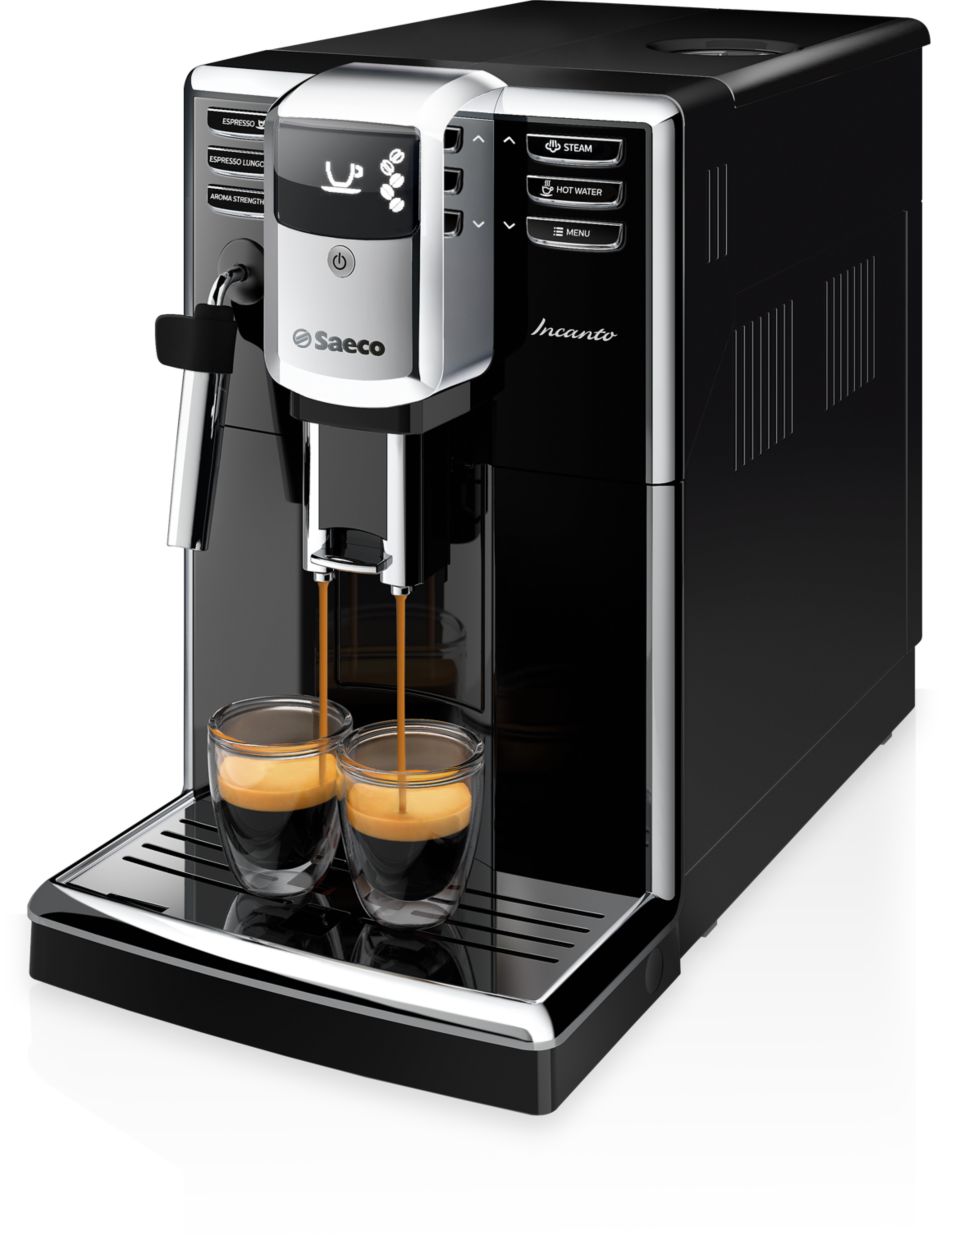 Incanto Super-automatic espresso machine HD8911/47